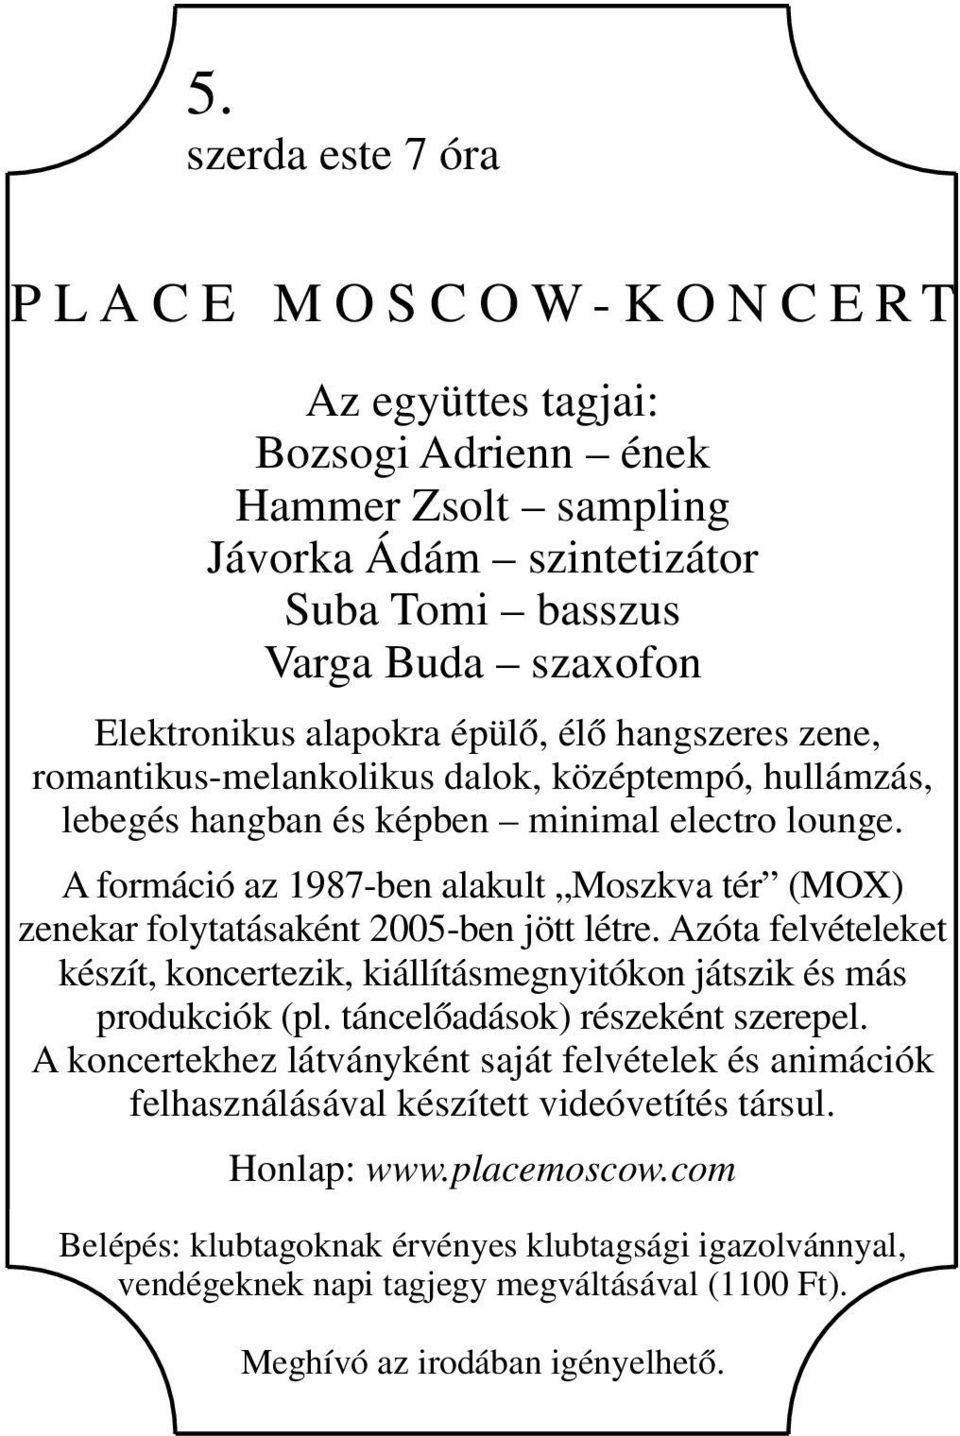 A formáció az 1987-ben alakult Moszkva tér (MOX) zenekar folytatásaként 2005-ben jött létre. Azóta felvételeket készít, koncertezik, kiállításmegnyitókon játszik és más produkciók (pl.